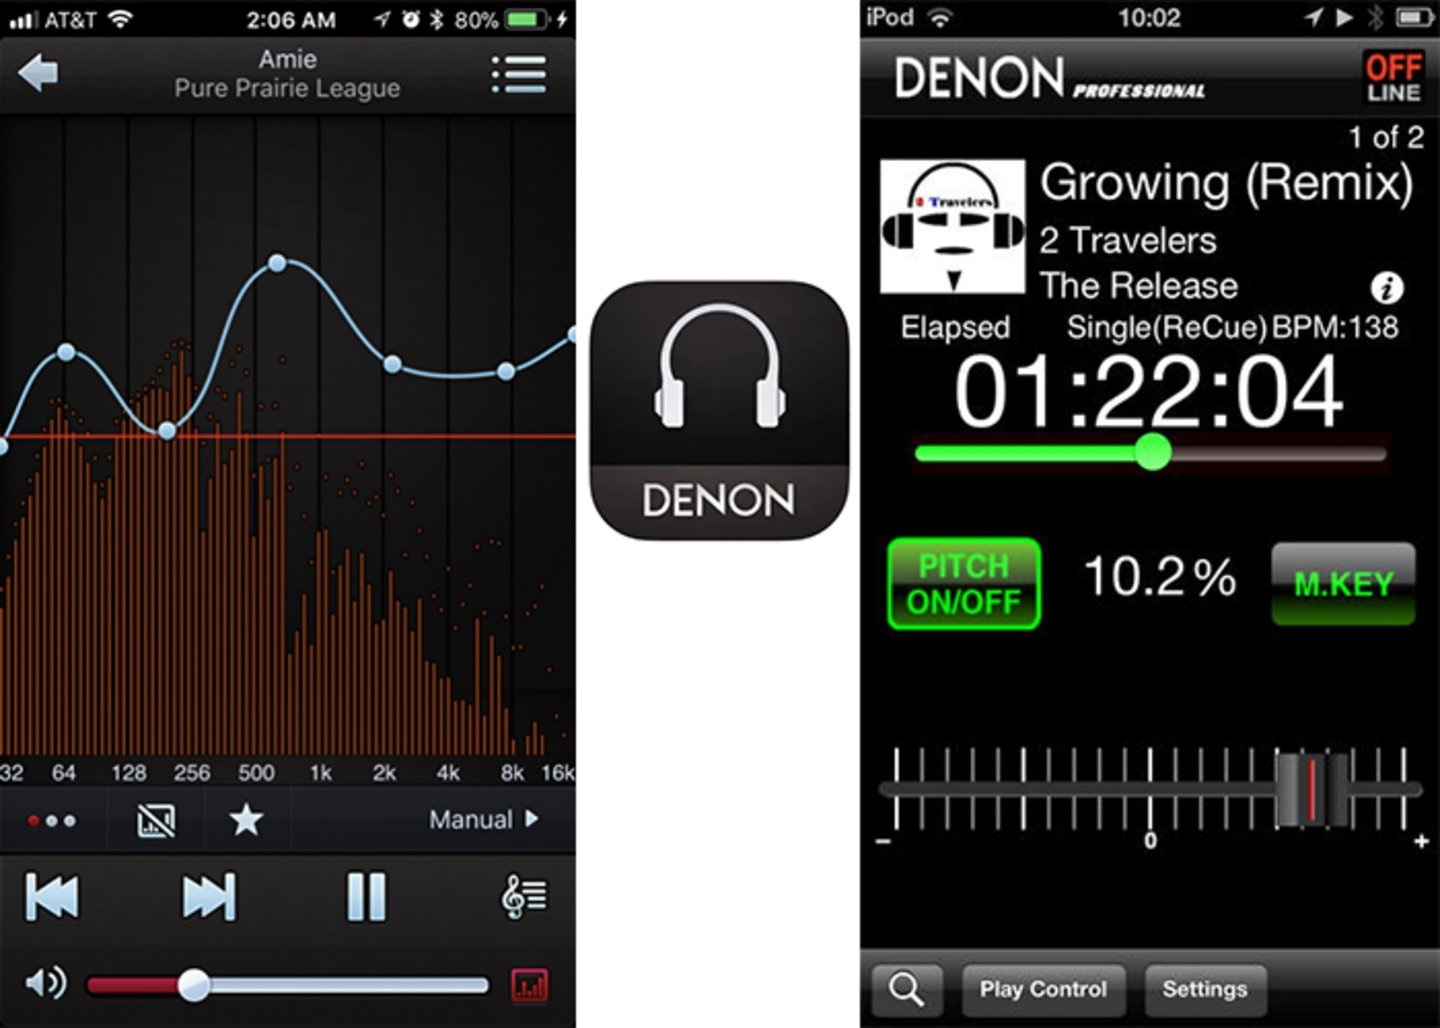 Denon Audio - descubre una nueva dimension auditiva